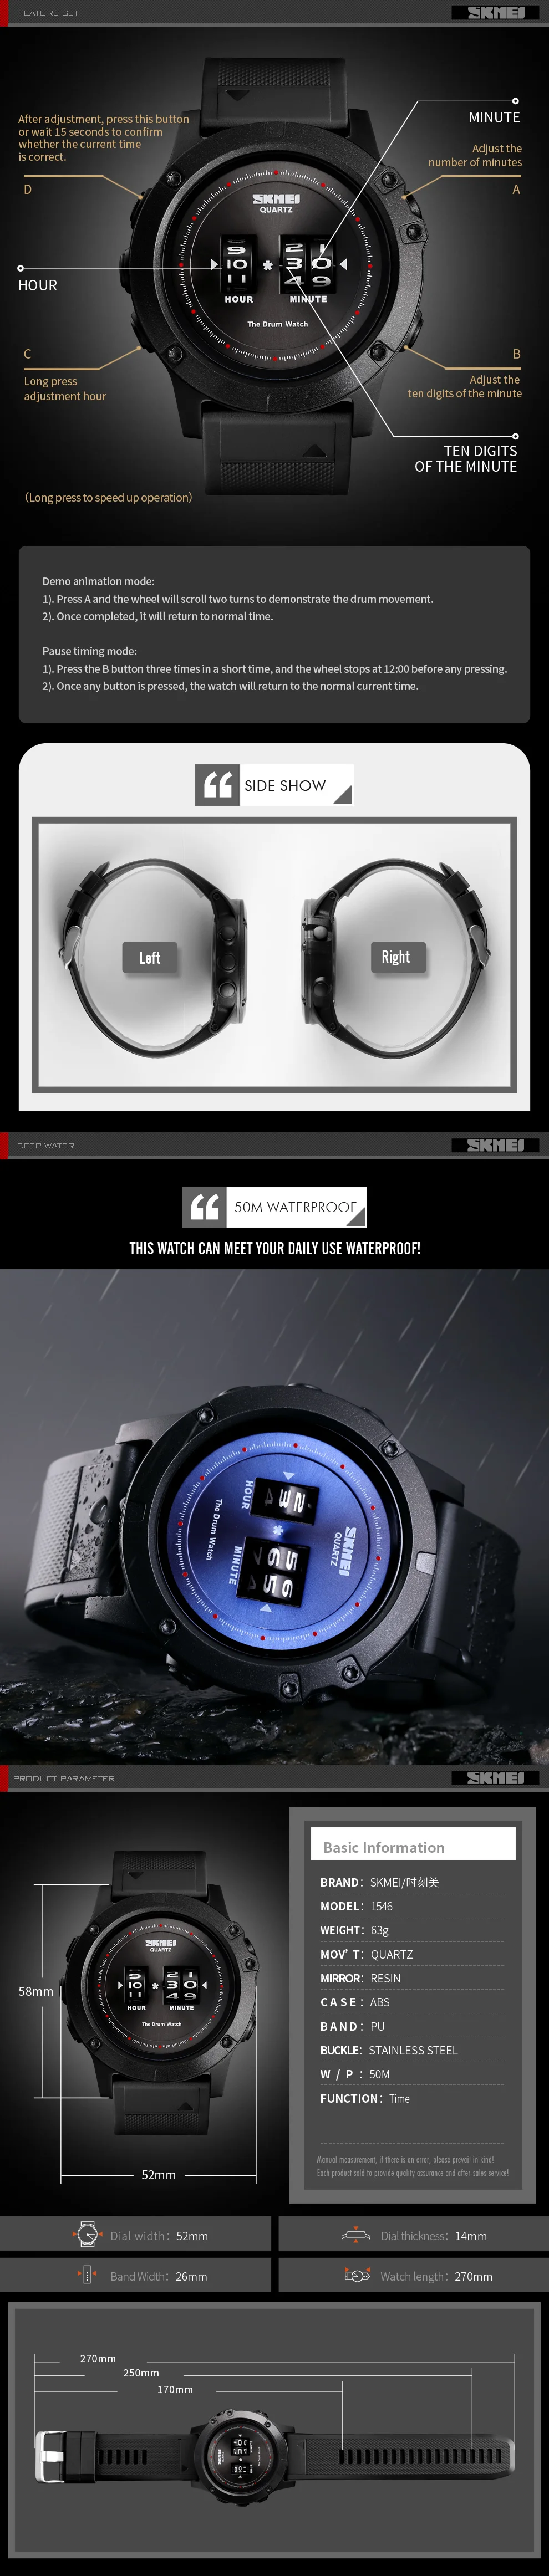 SKMEI запатентованный дизайн мужские часы мужской большой циферблат Модные кварцевые часы водонепроницаемые PU ремешок наручные часы reloj hombre 1546